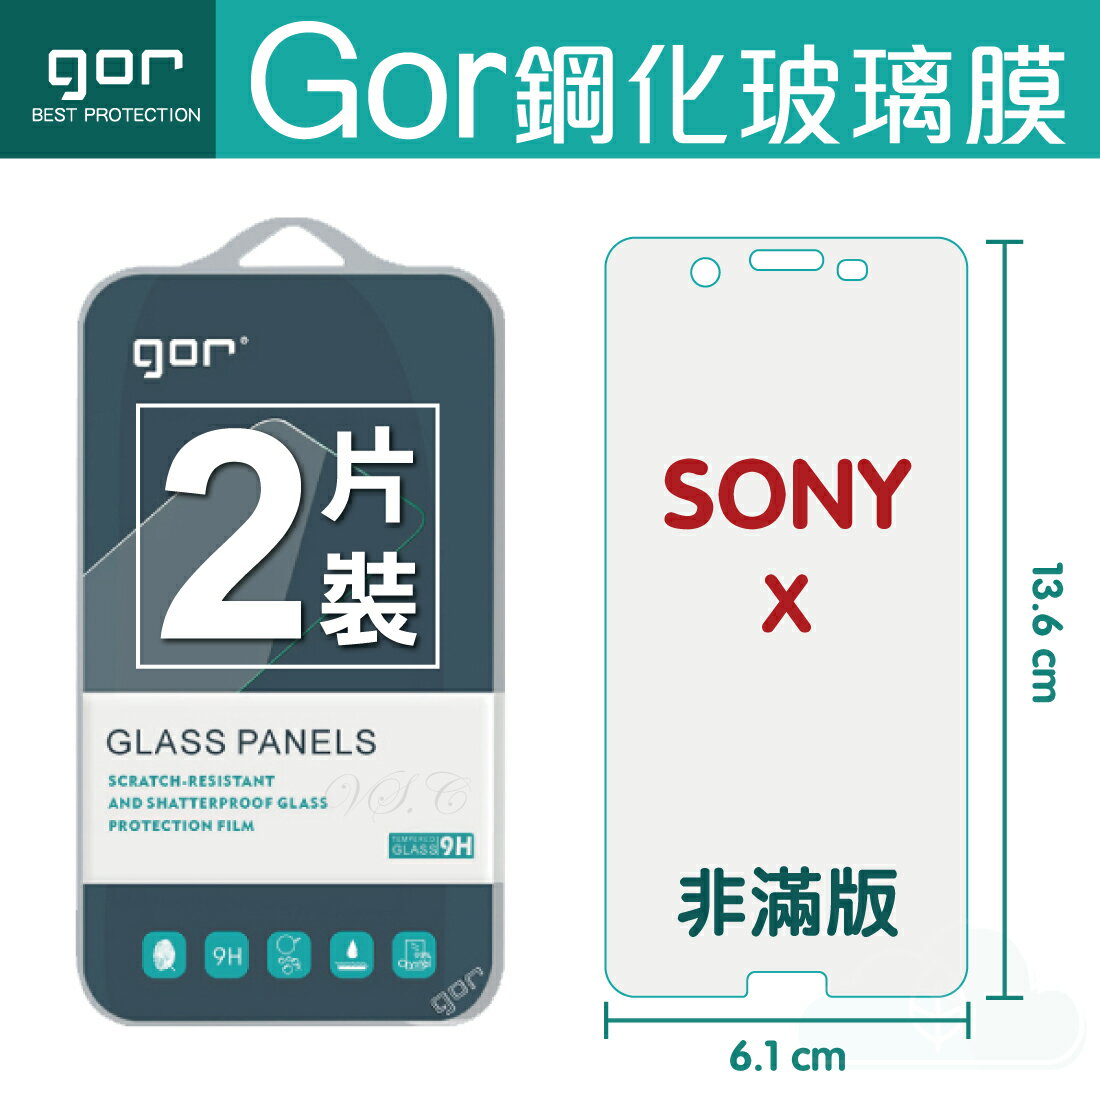 【SONY】GOR 9H SONY Xperia X 鋼化 玻璃 保護貼 全透明非滿版 兩片裝【全館滿299免運費】